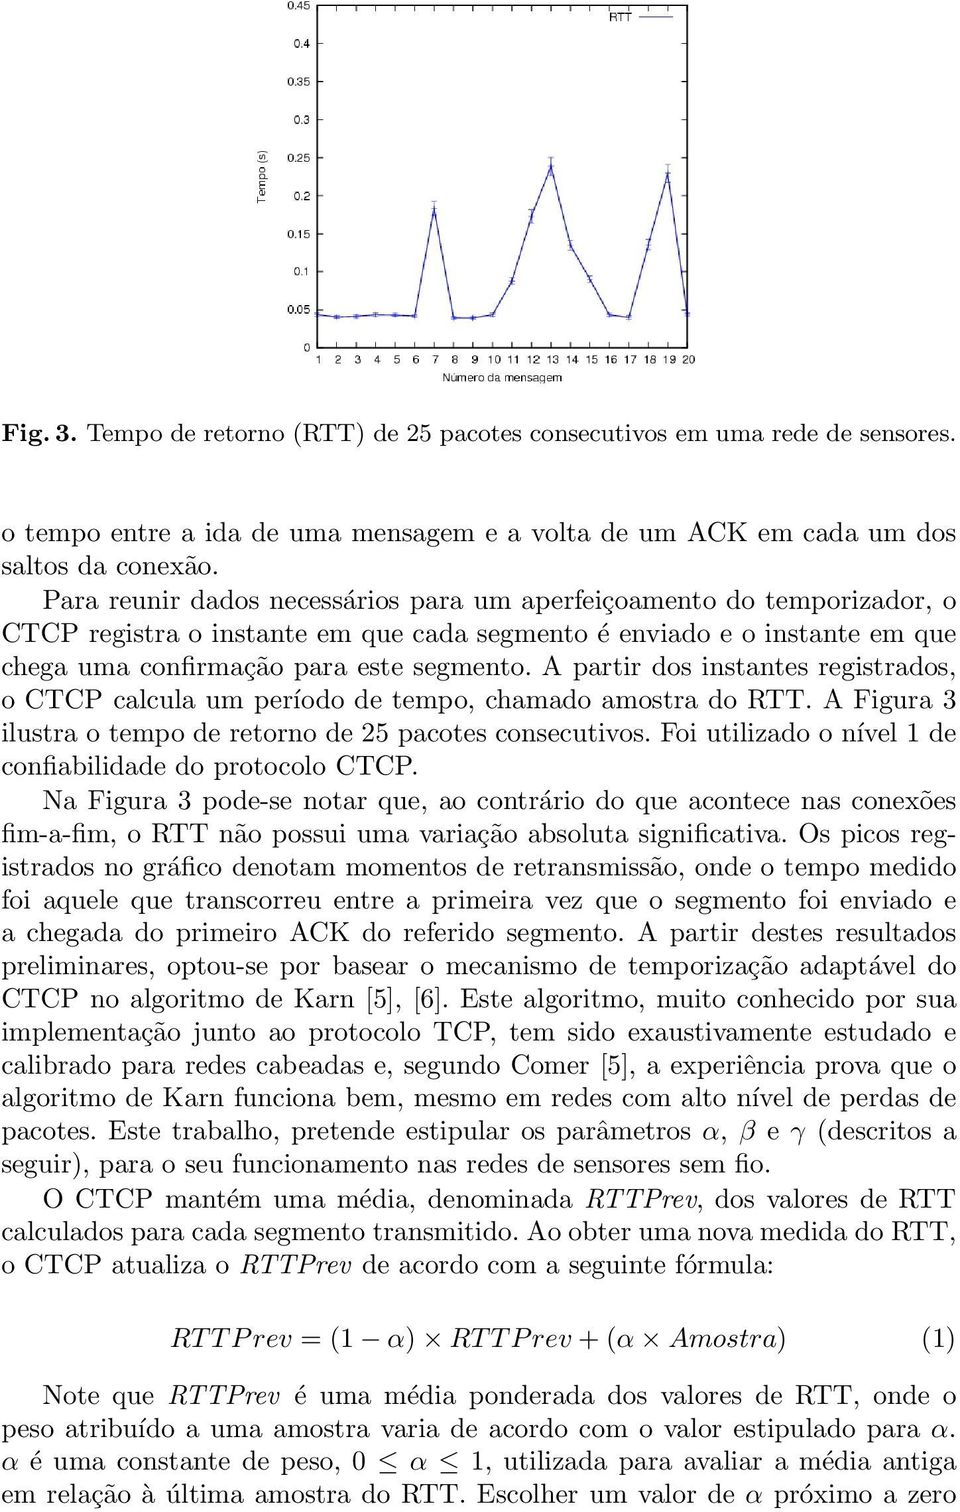 A partir dos instantes registrados, o CTCP calcula um período de tempo, chamado amostra do RTT. A Figura 3 ilustra o tempo de retorno de 25 pacotes consecutivos.